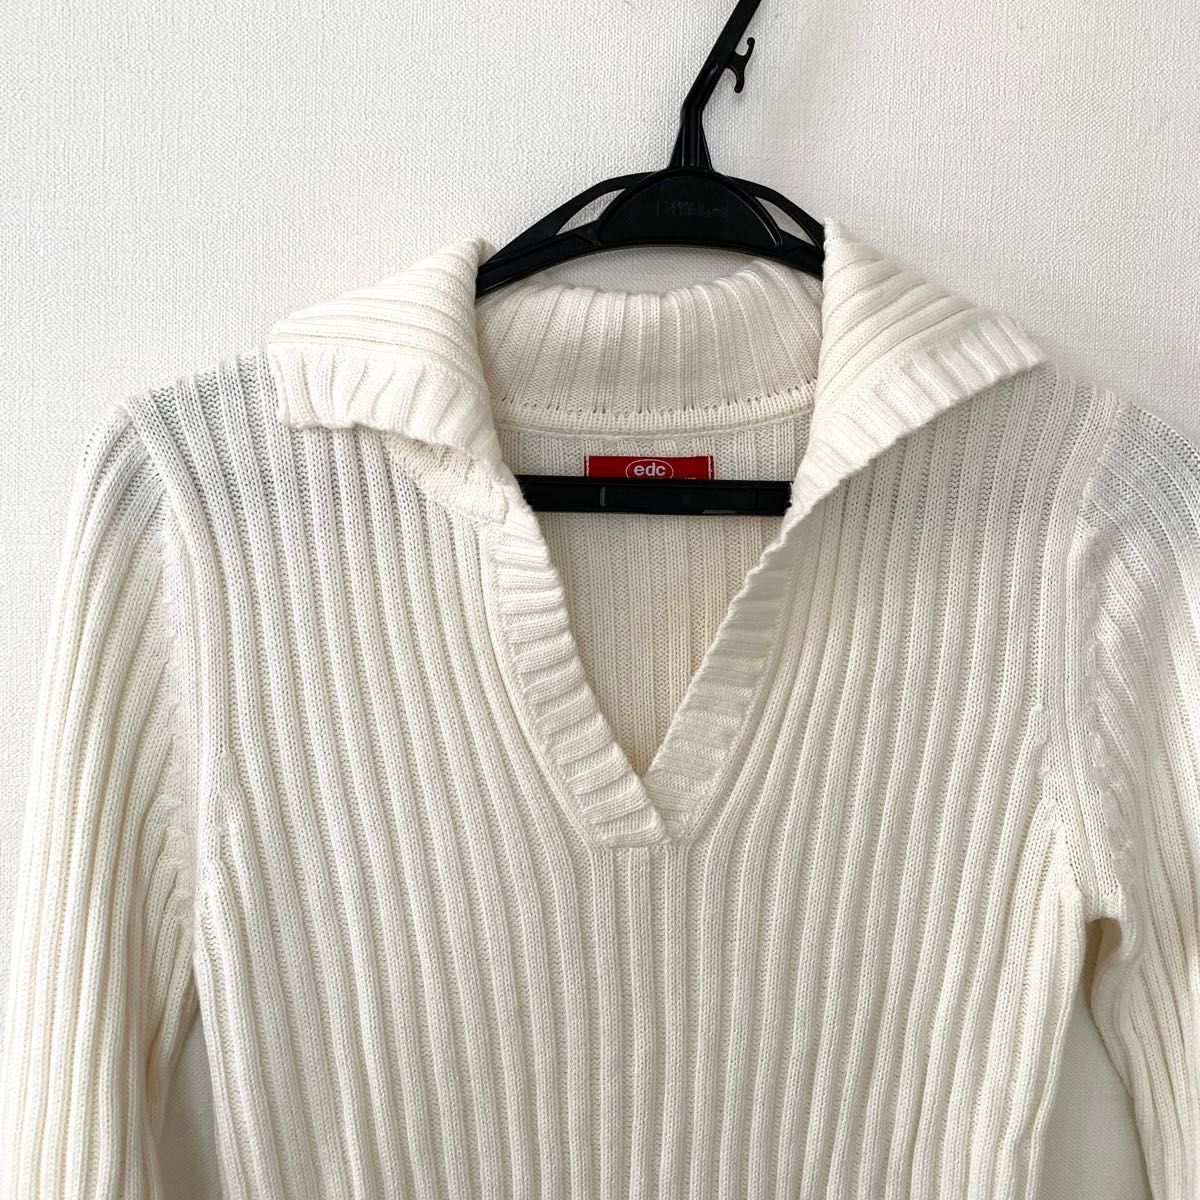 美品 ESPRIT エスプリリブニット セーター 可愛い 刺繍 コットン混 オフホワイト M